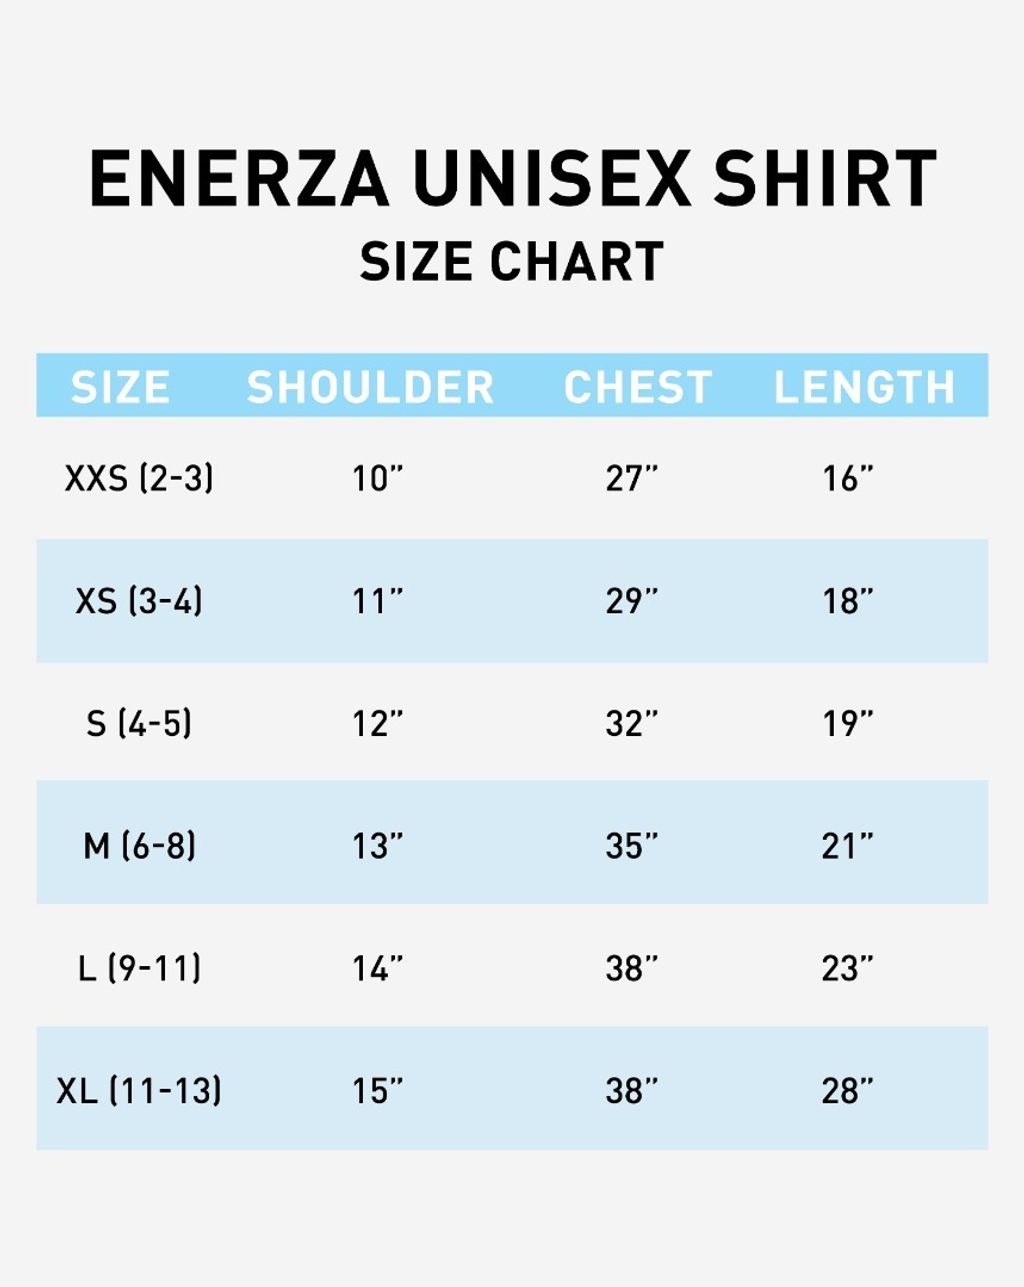 Enerza Unisex Shirt.jpeg